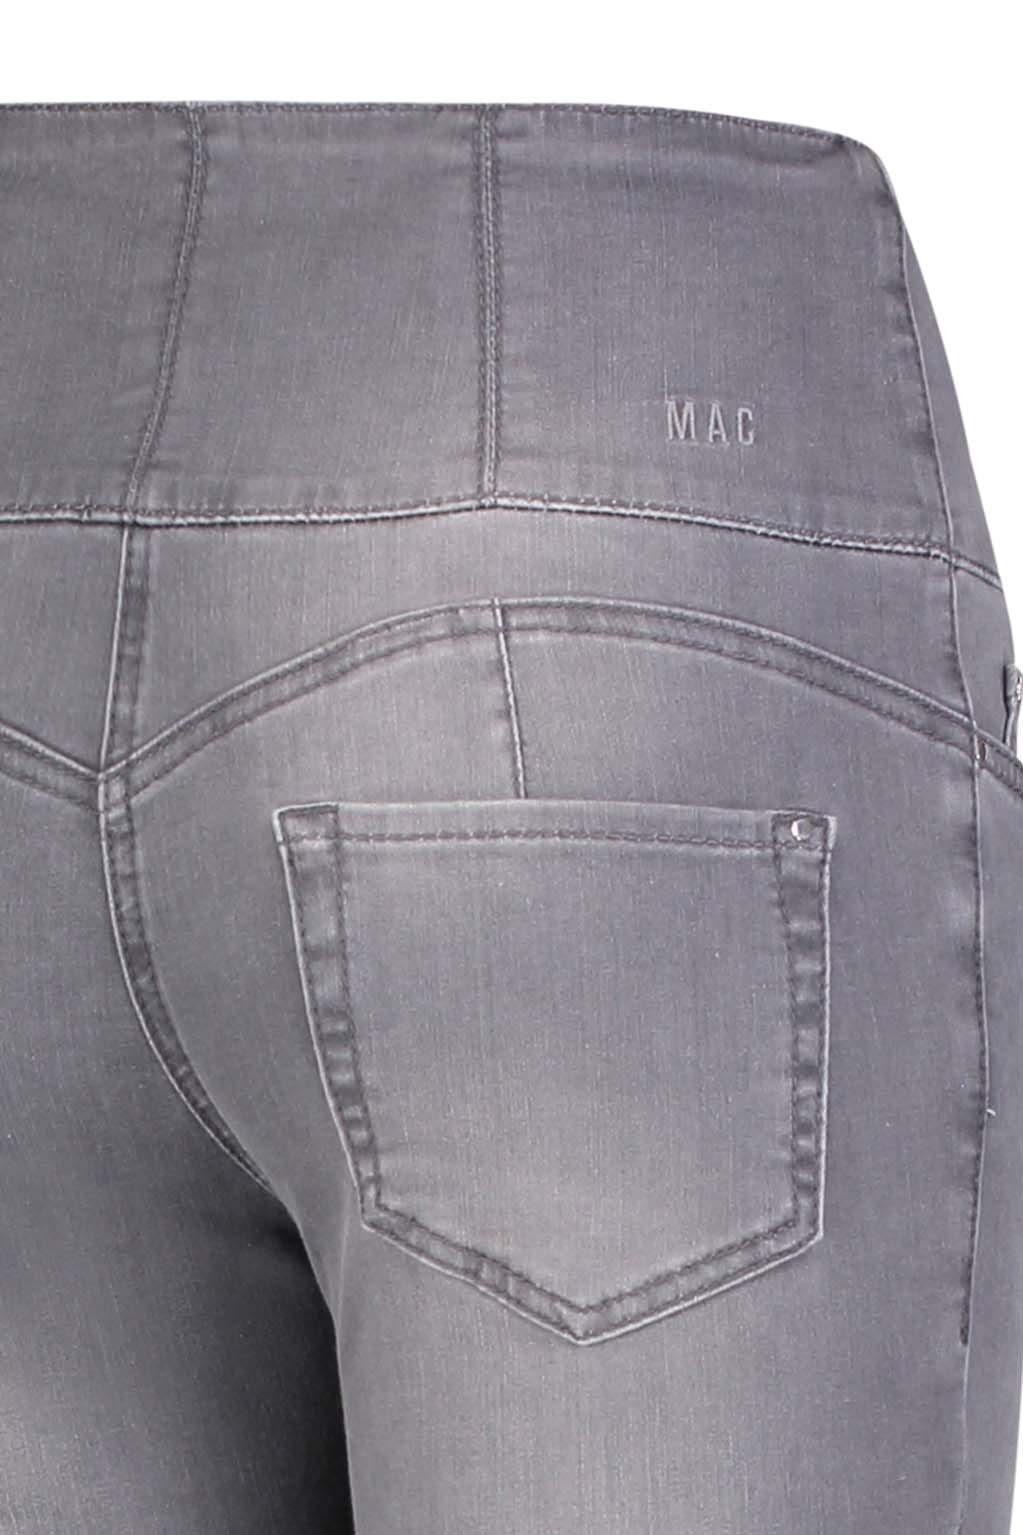 5905-90-0395 wash Stretch-Jeans CURVY MAC commercial grey D346 MAC